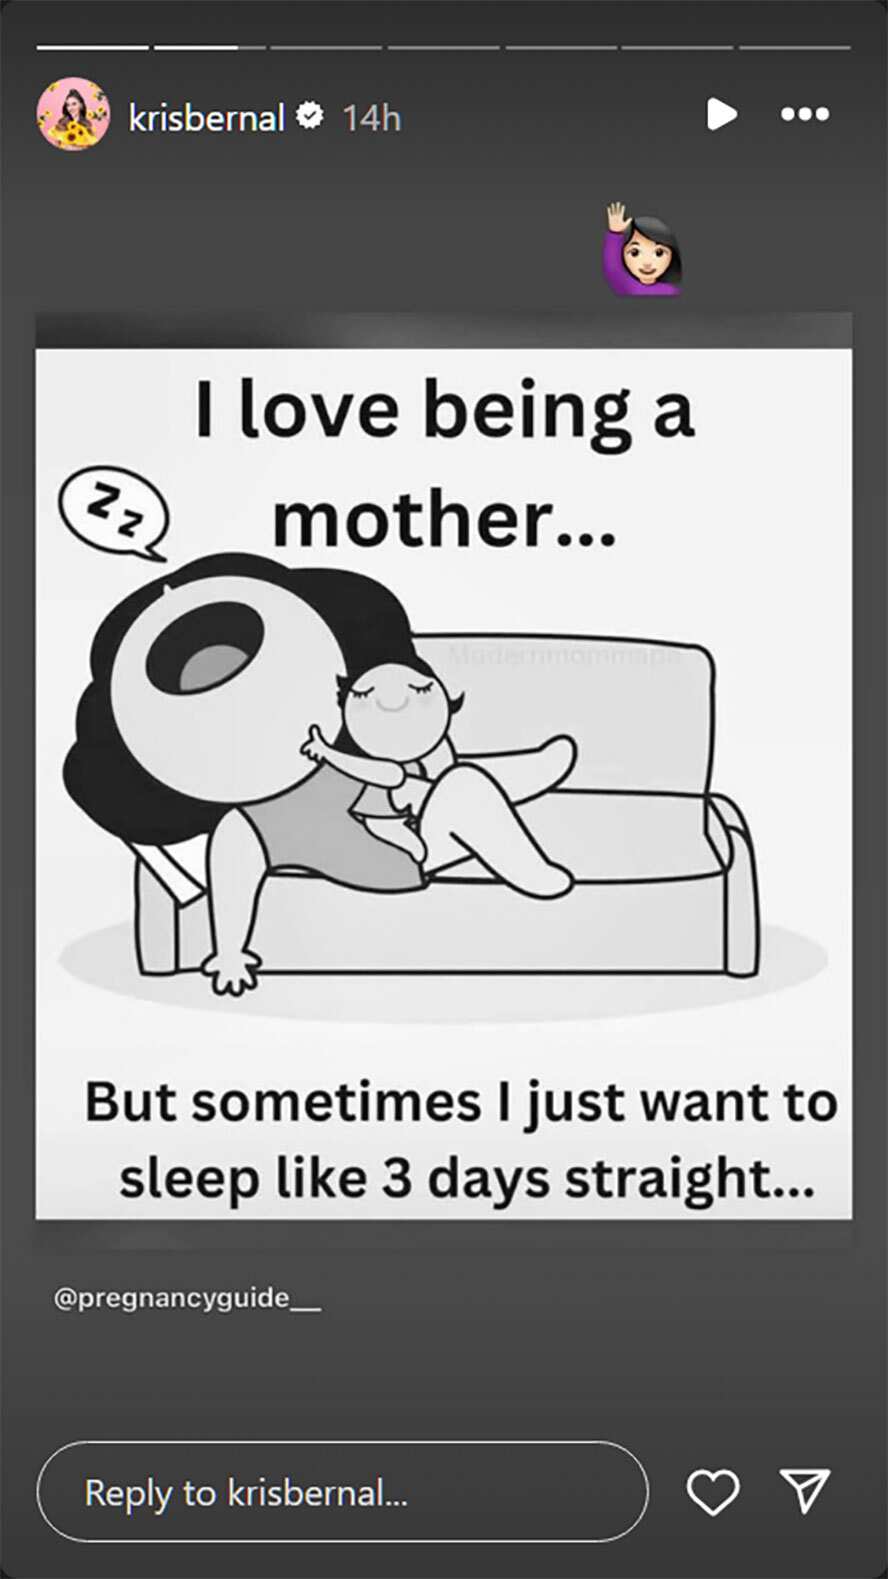 Kris Bernal, nag-post ng relatable quote para sa mga ina: “I love being a mother”